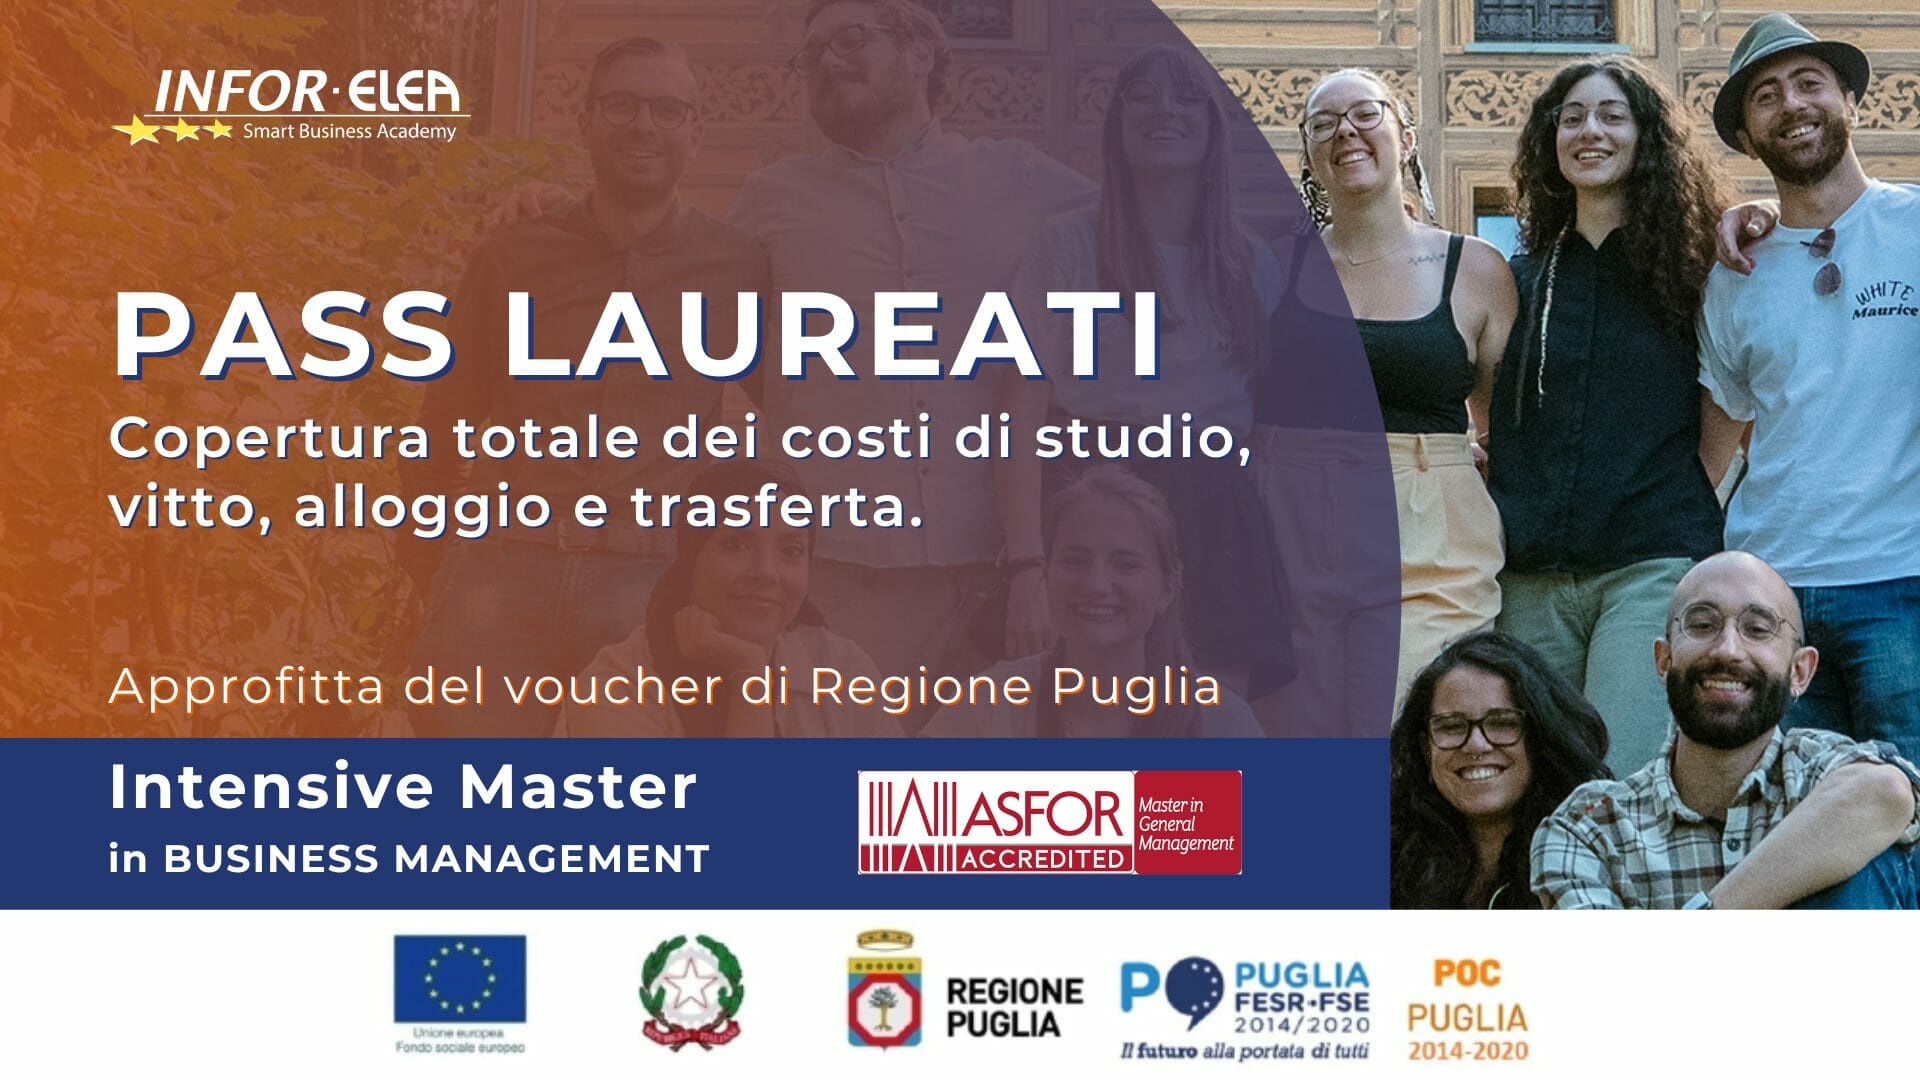 “PASS LAUREATI” partecipa gratuitamente al Master totalmente finanziato da Regione Puglia